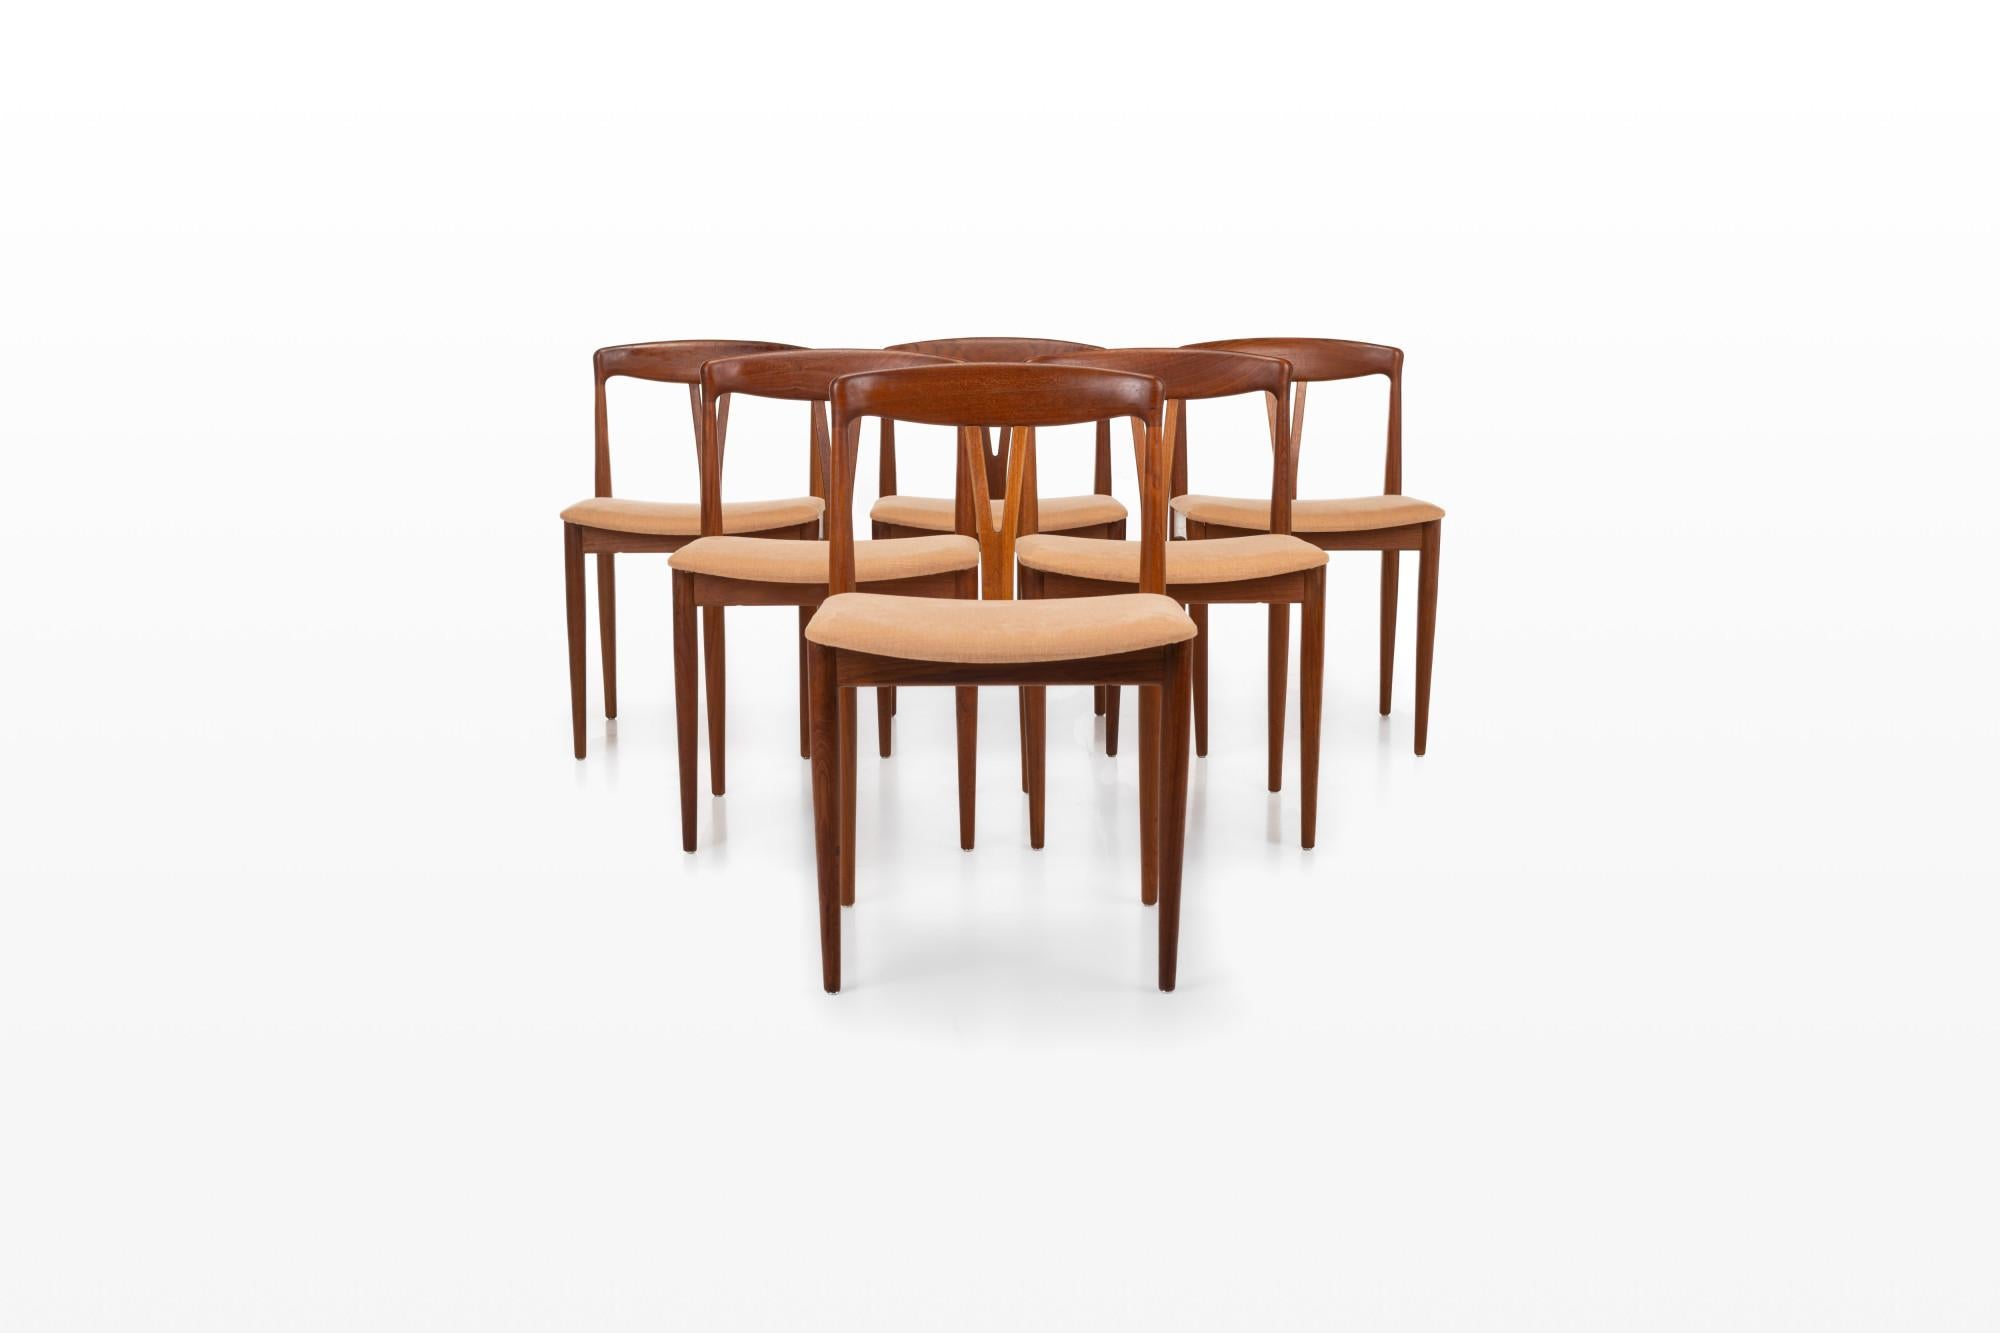 Ensemble de six chaises de salle à manger produites au Danemark dans les années 1960. Les chaises ont un cadre en teck et sont recouvertes d'un tissu couleur pêche.